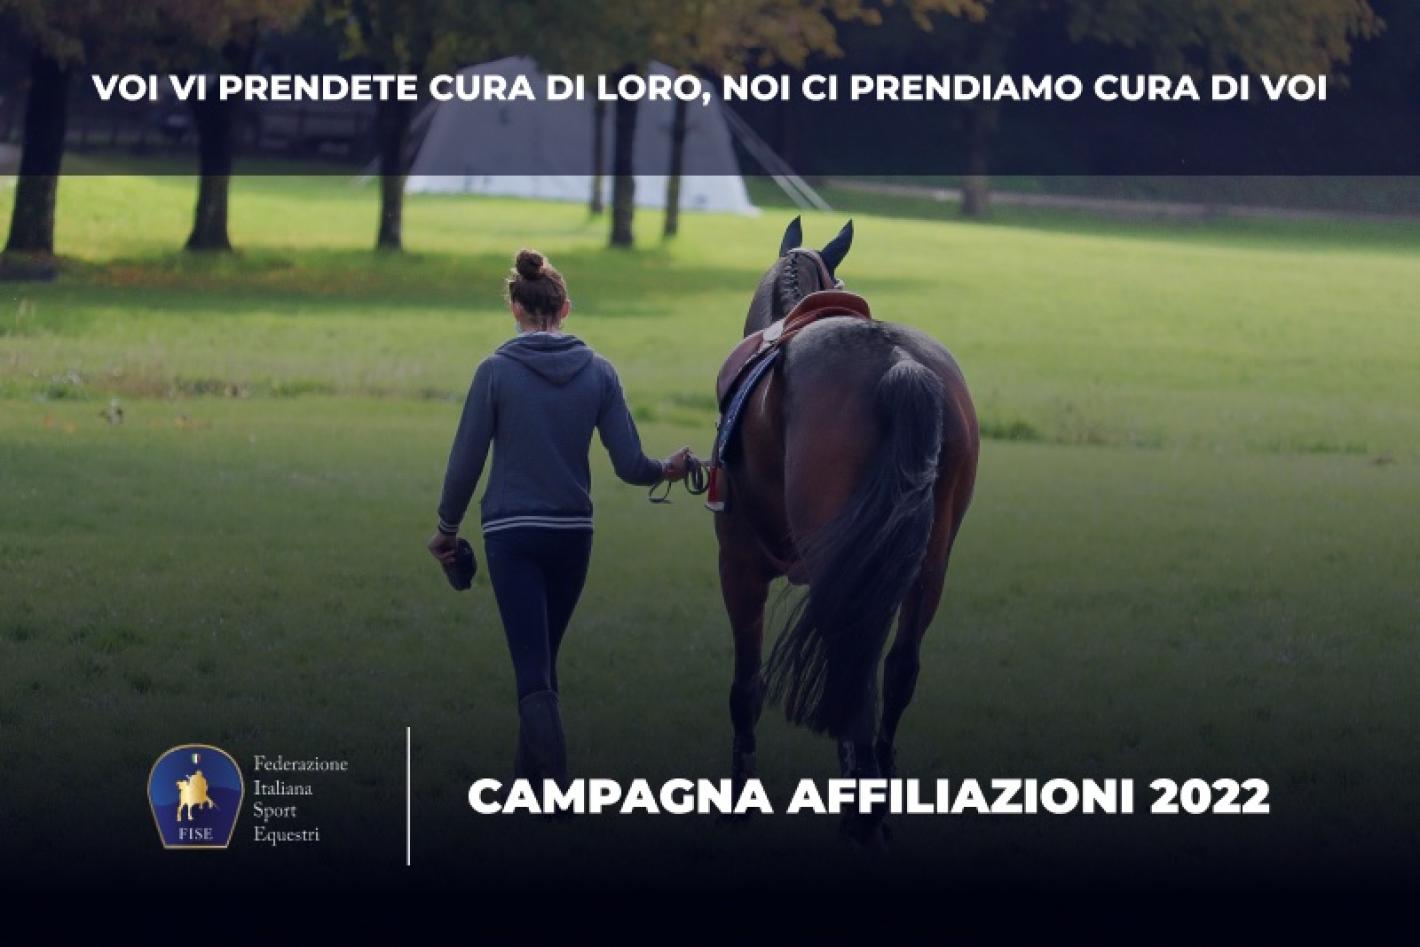 images/lombardia/medium/Campagna_affiliazioni_2022.jpg